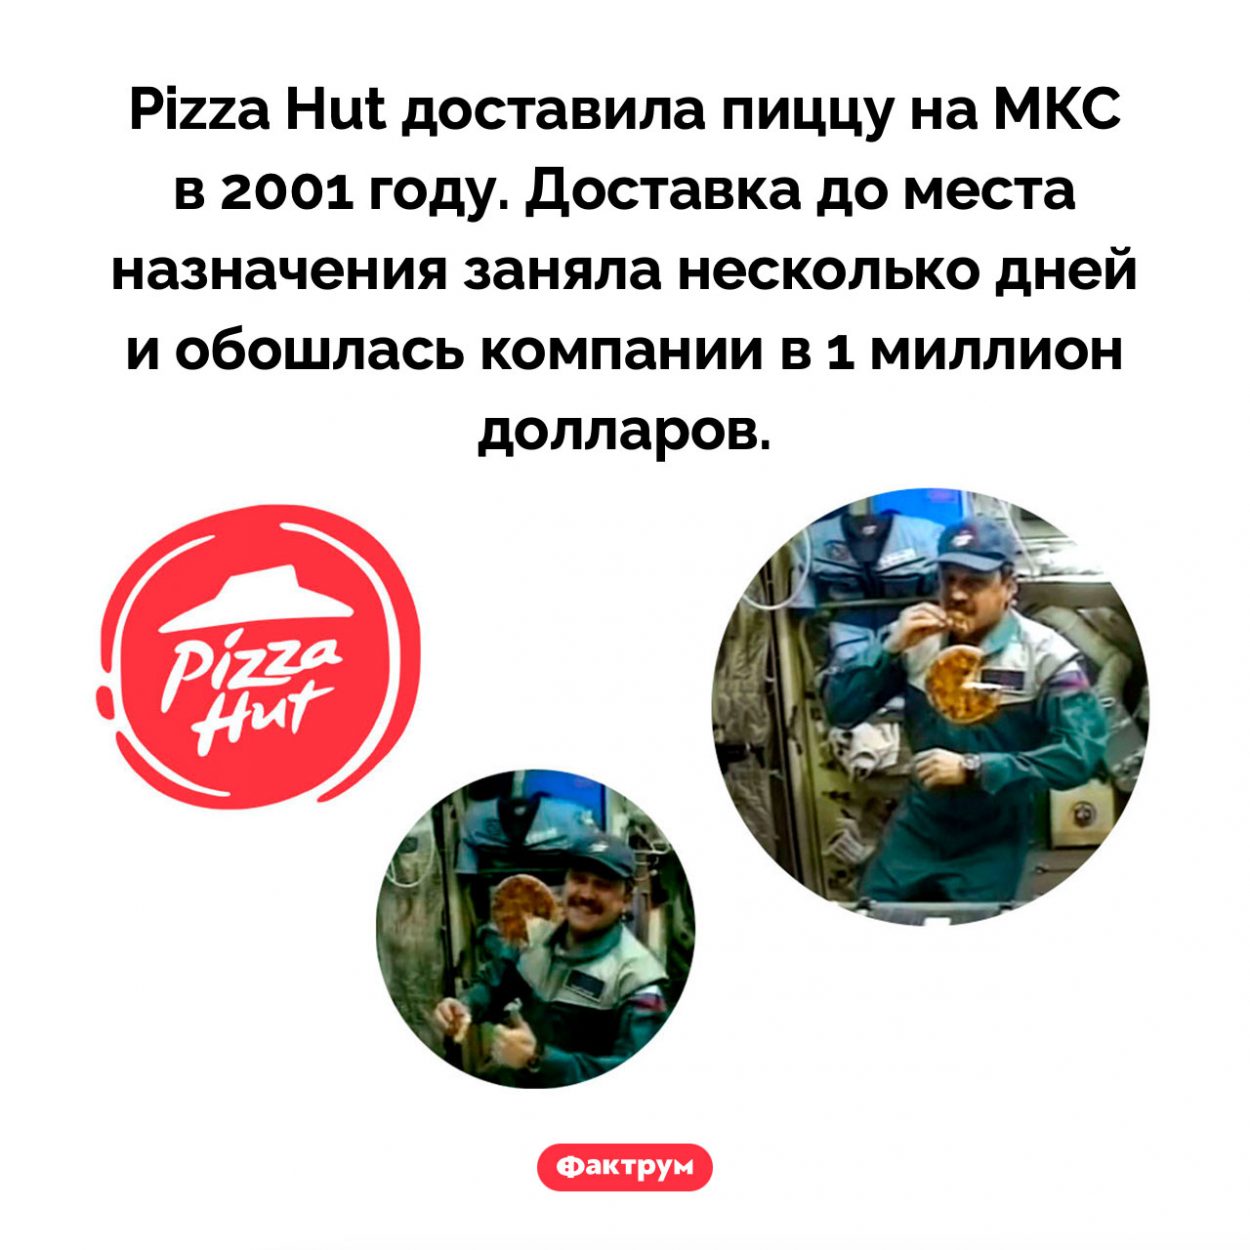 Pizza Hut доставила пиццу на МКС. Pizza Hut доставила пиццу на МКС в 2001 году. Доставка до места назначения заняла несколько дней и обошлась компании в 1 миллион долларов.